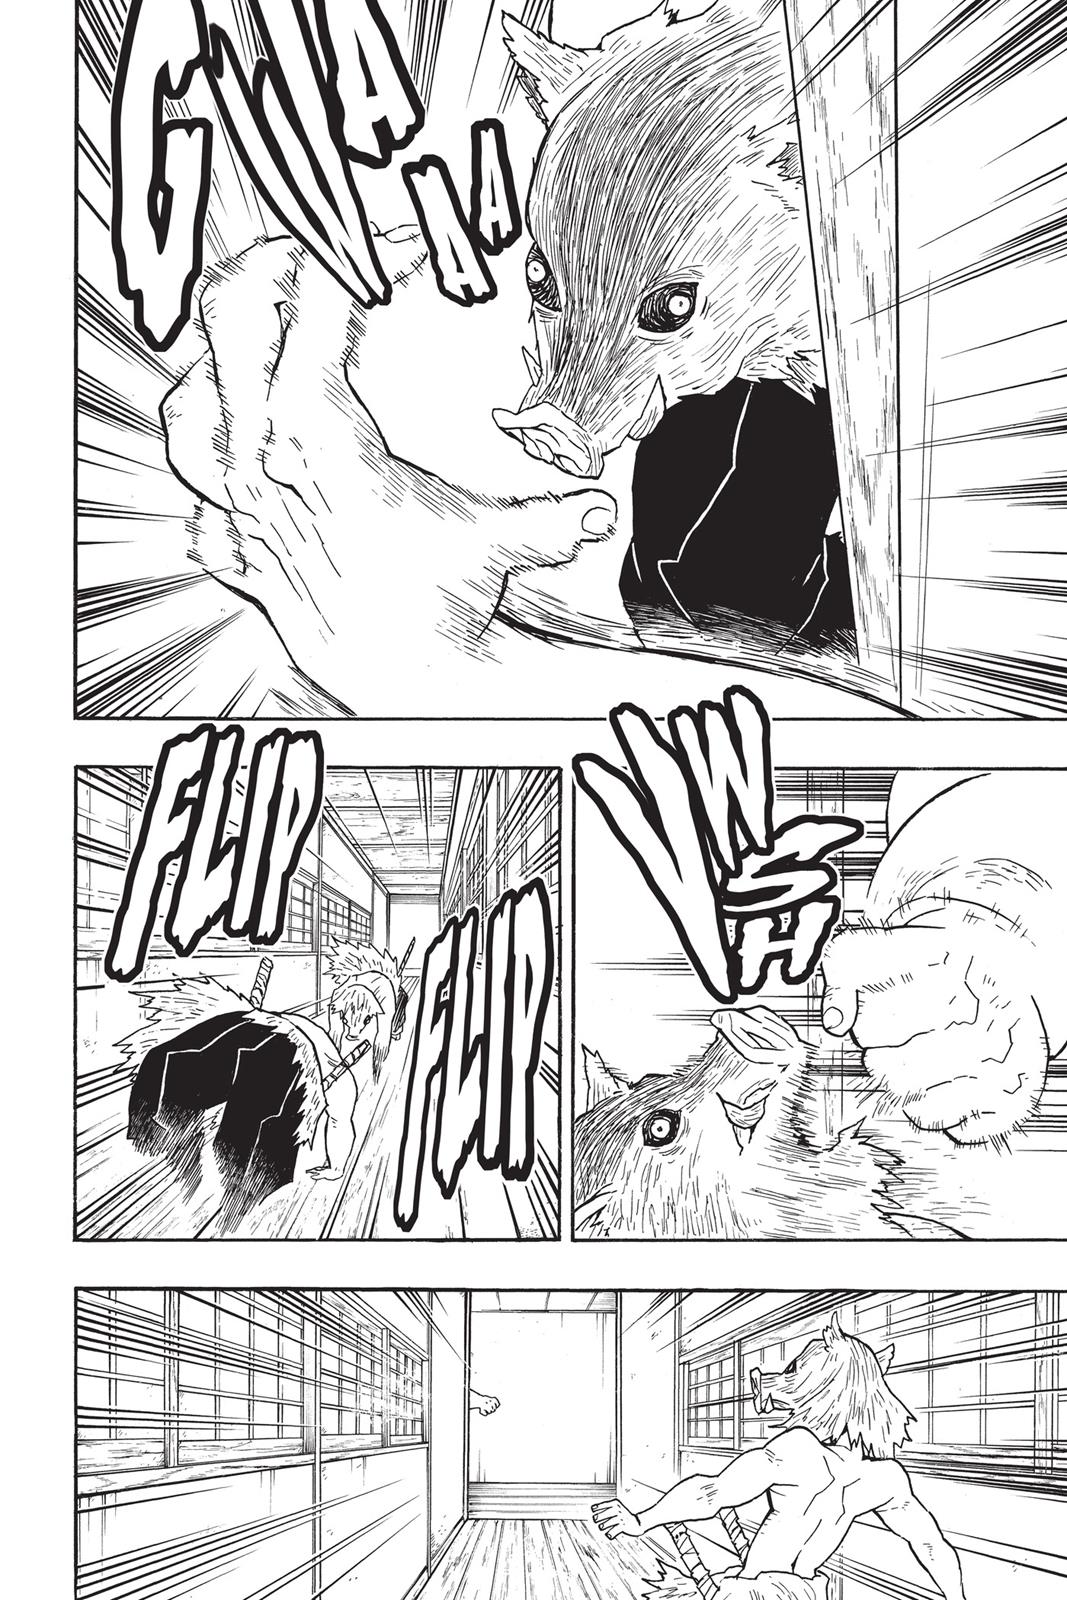 Demon Slayer Manga Manga Chapter - 23 - image 11